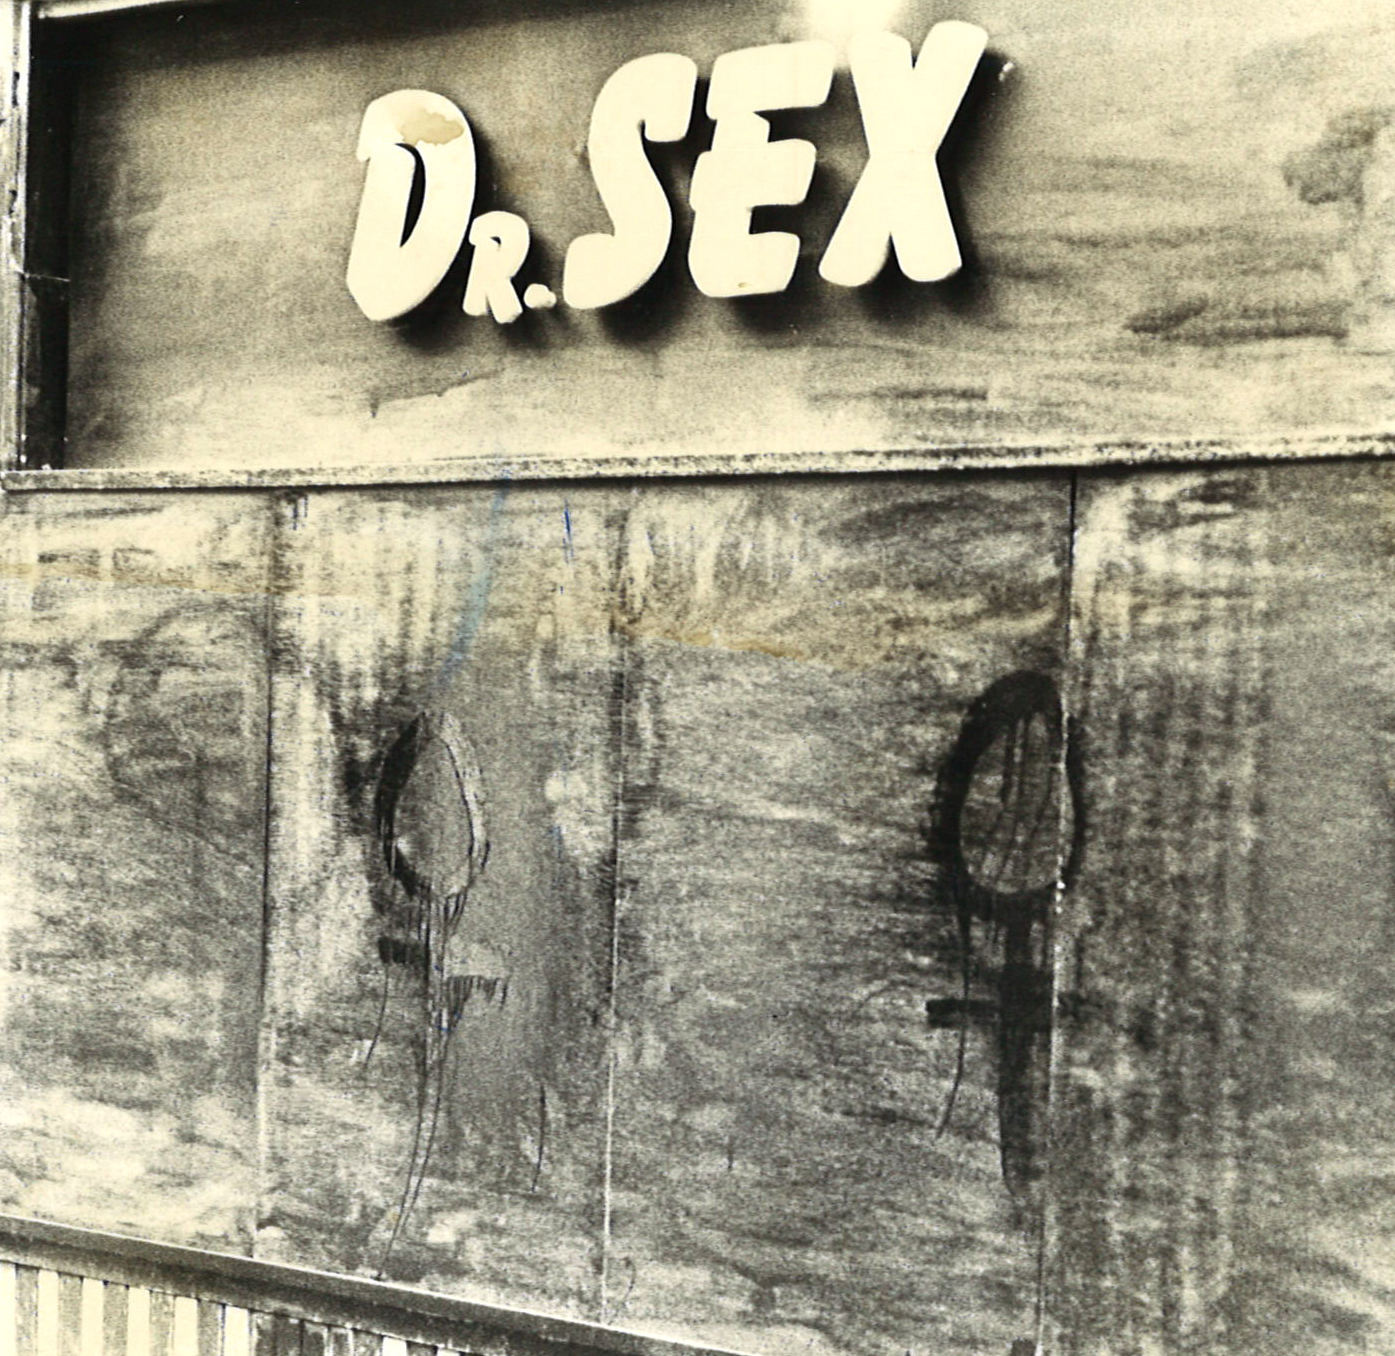 De bekladde voorgevel van Dr. Sex.